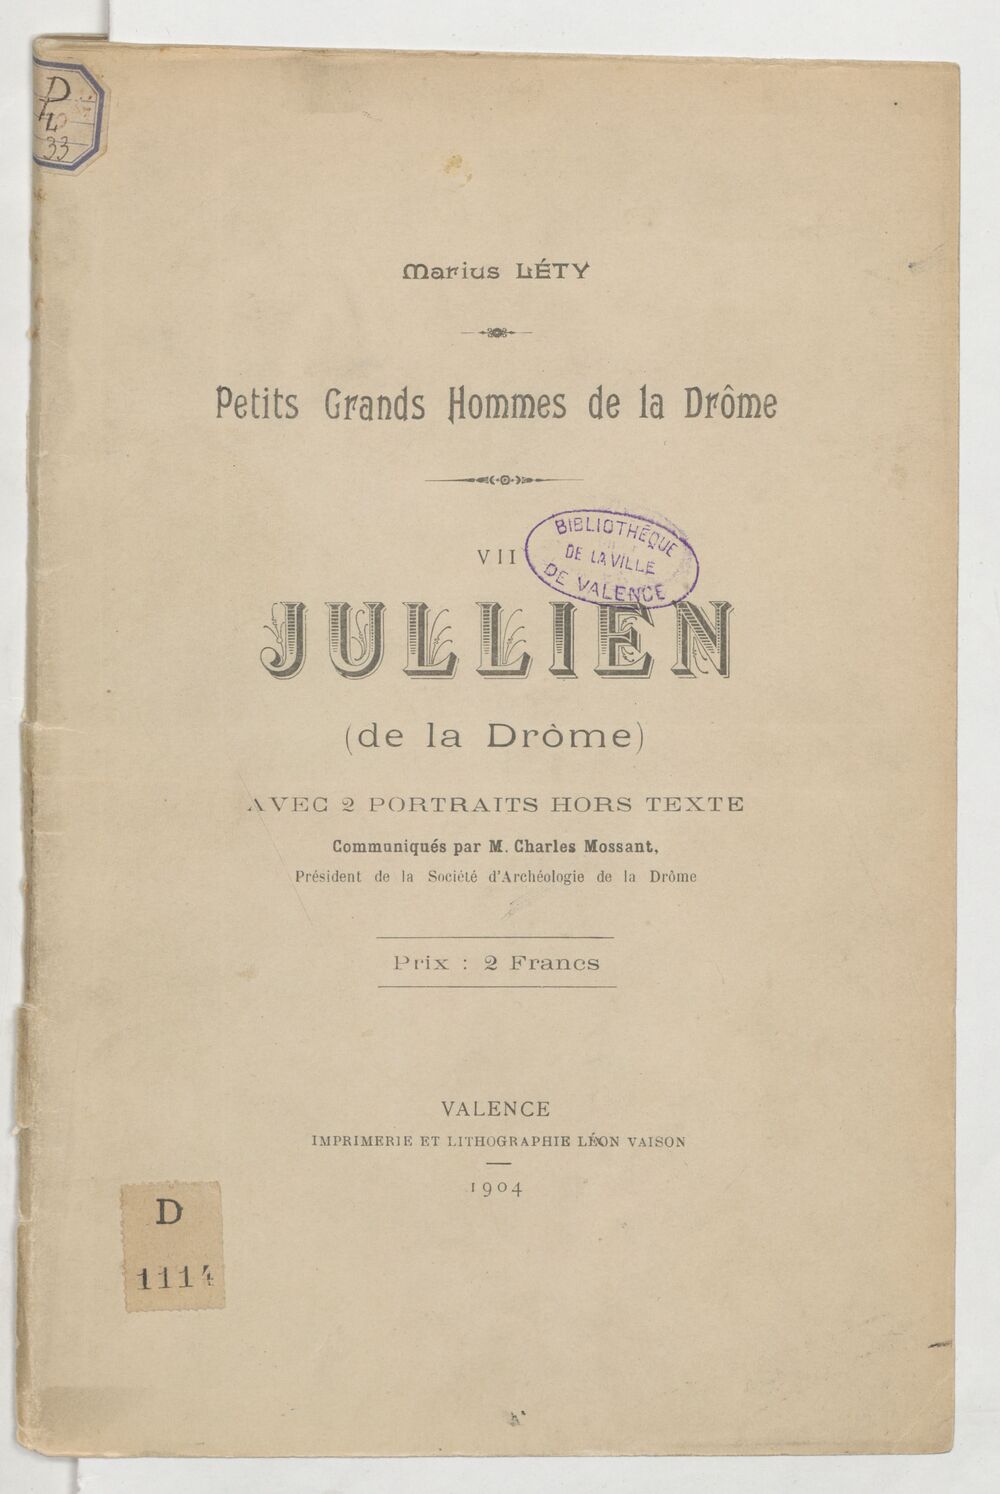 Jullien (de la Drôme) / [par] Marius Léty